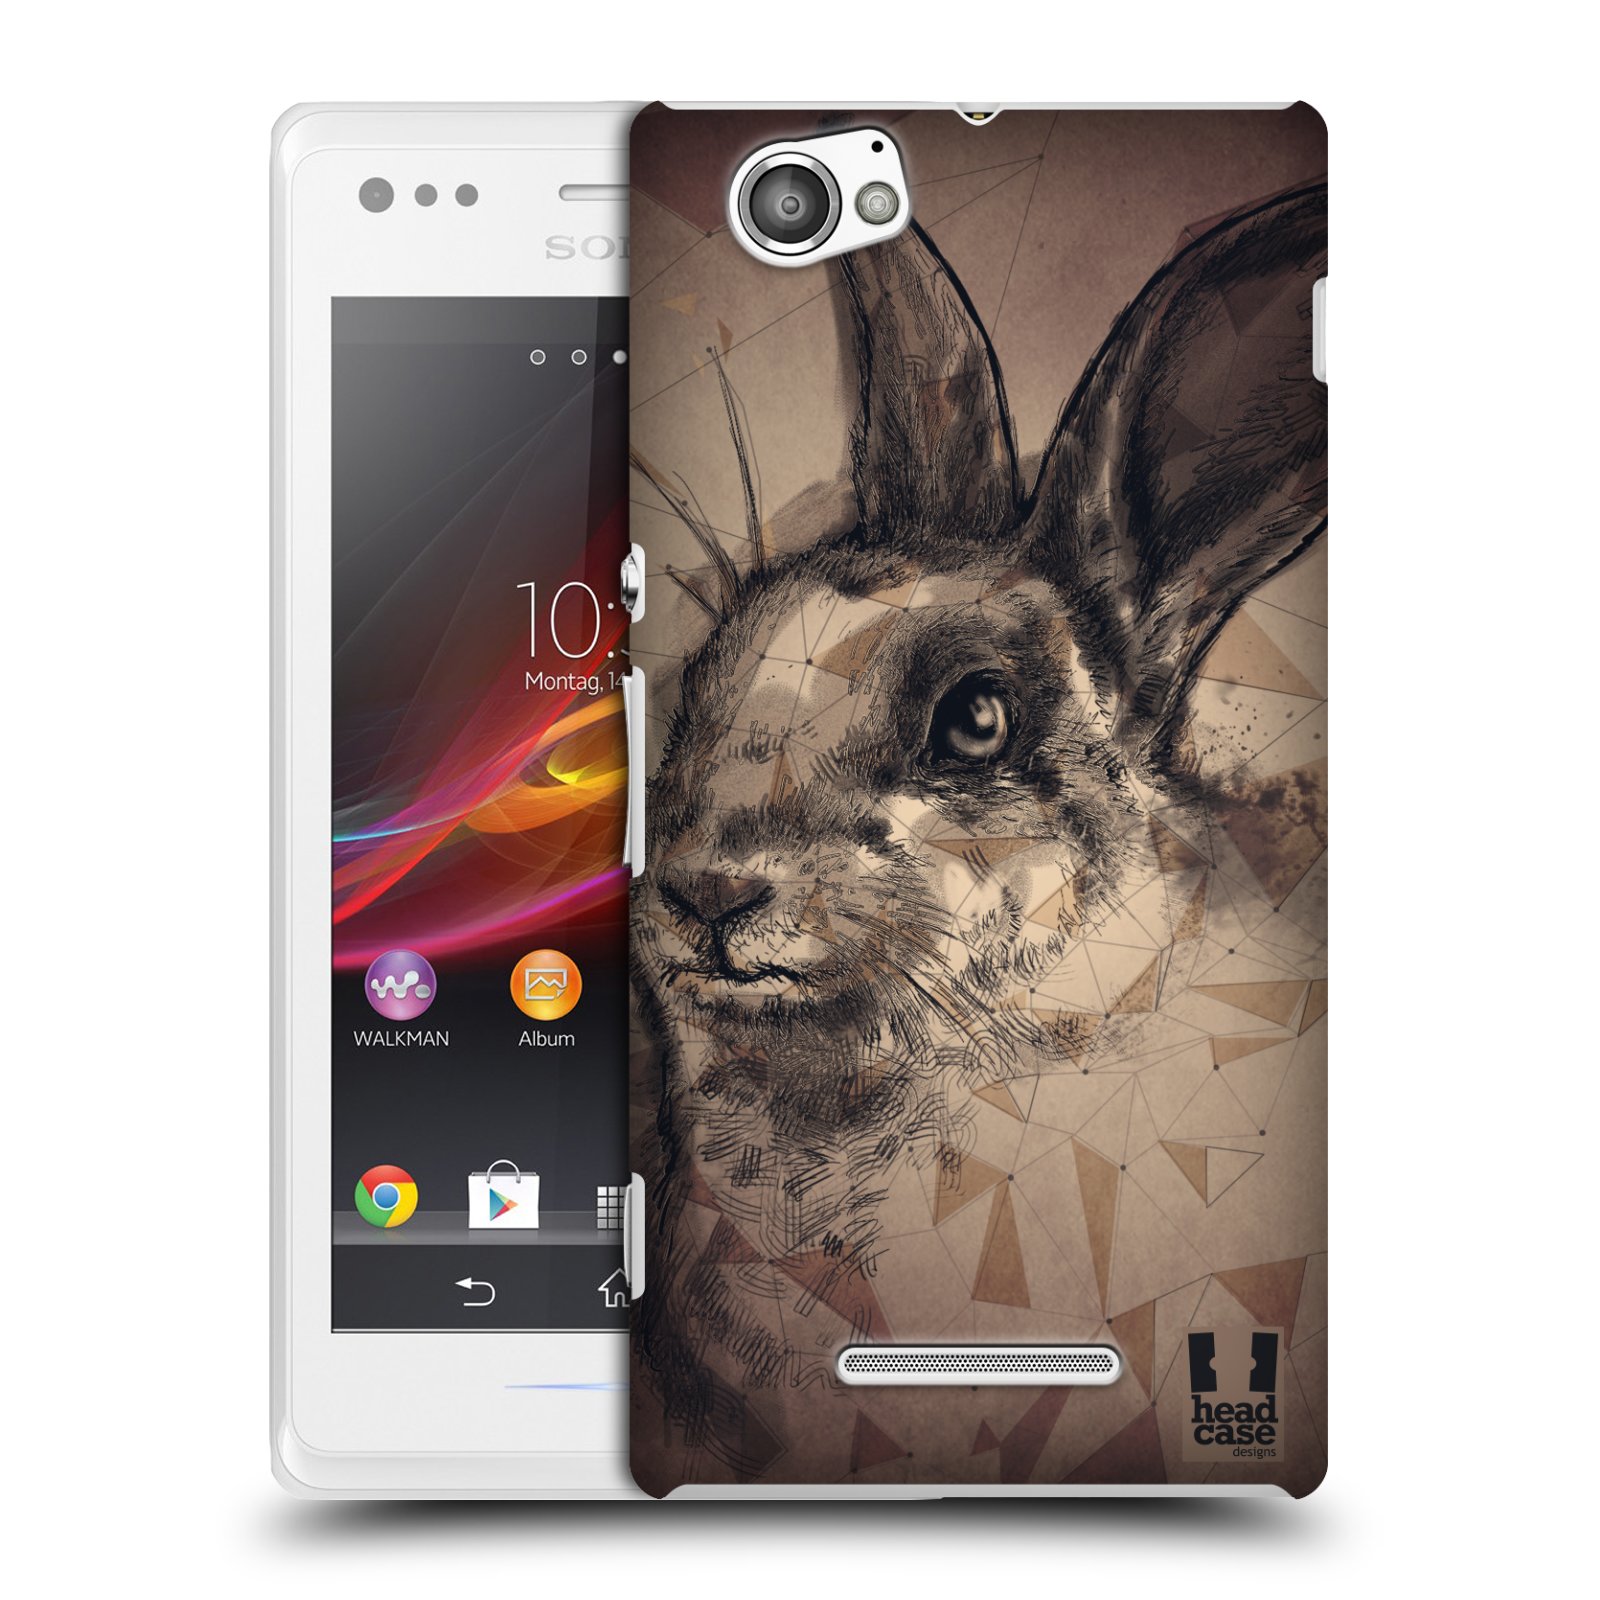 HEAD CASE plastový obal na mobil Sony Xperia M vzor Skica zvíře kreslené zajíc